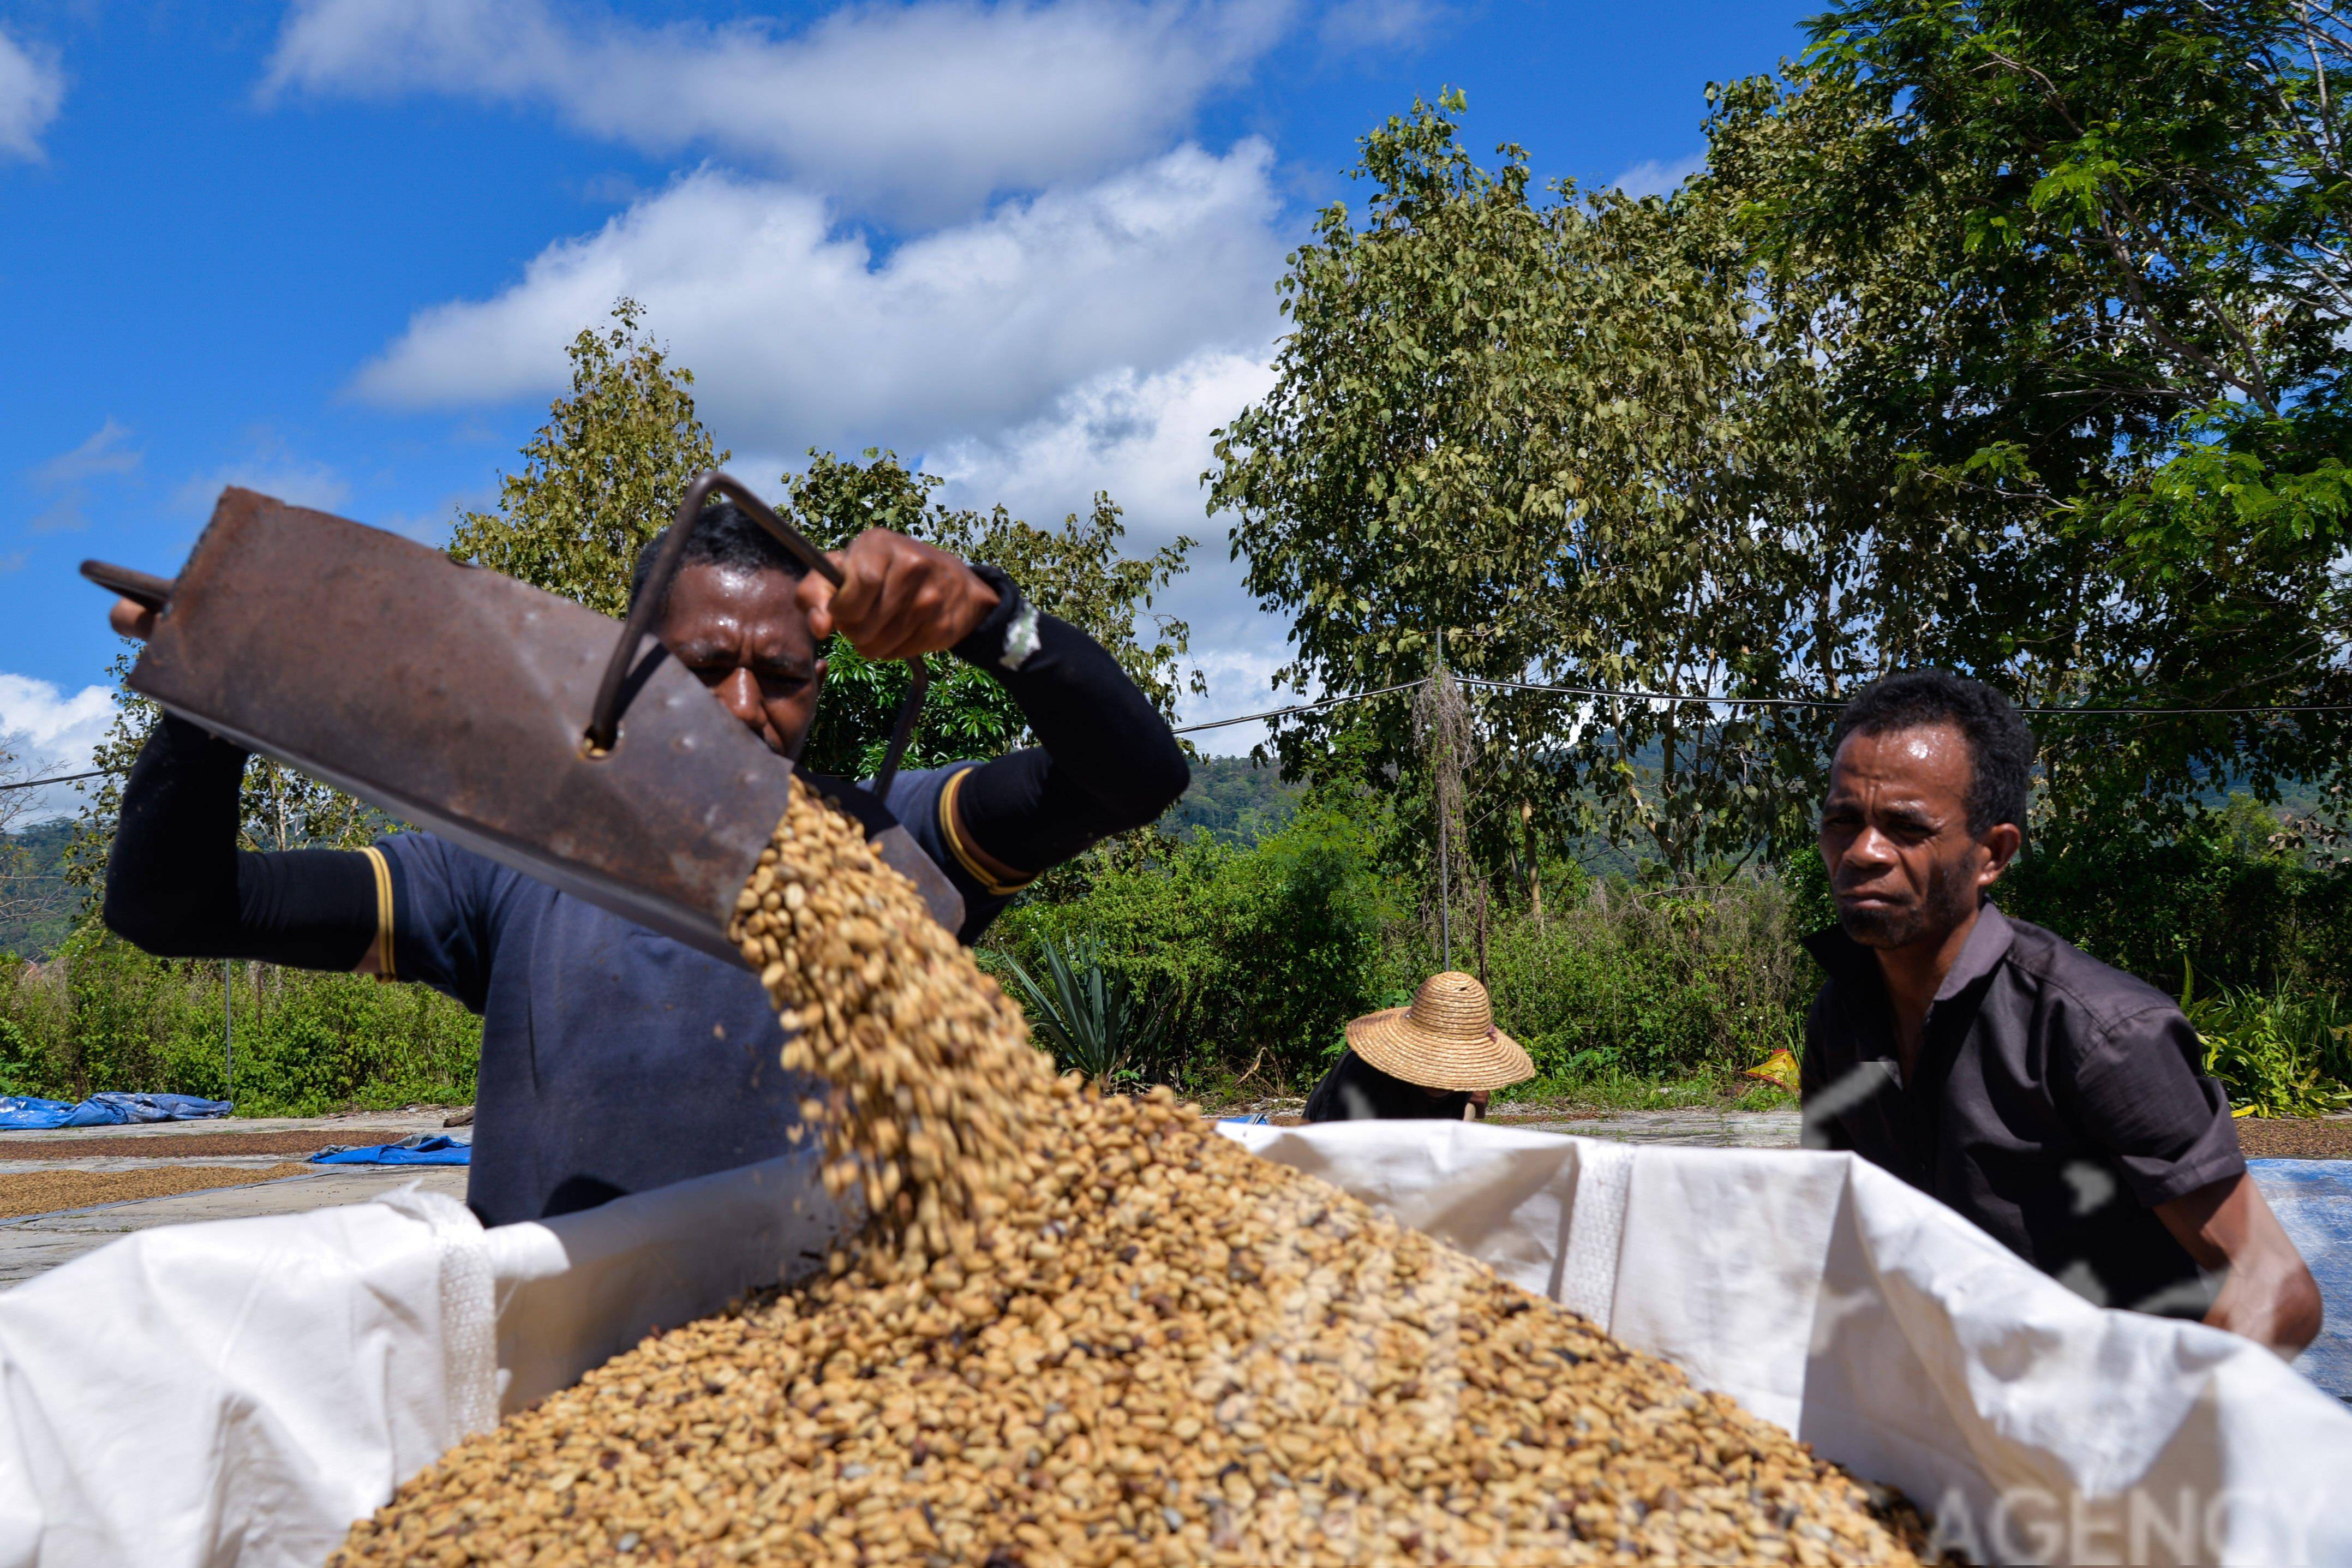 在东帝汶埃尔梅拉一家咖啡厂的晒场上,工人将晾晒好的咖啡豆装袋